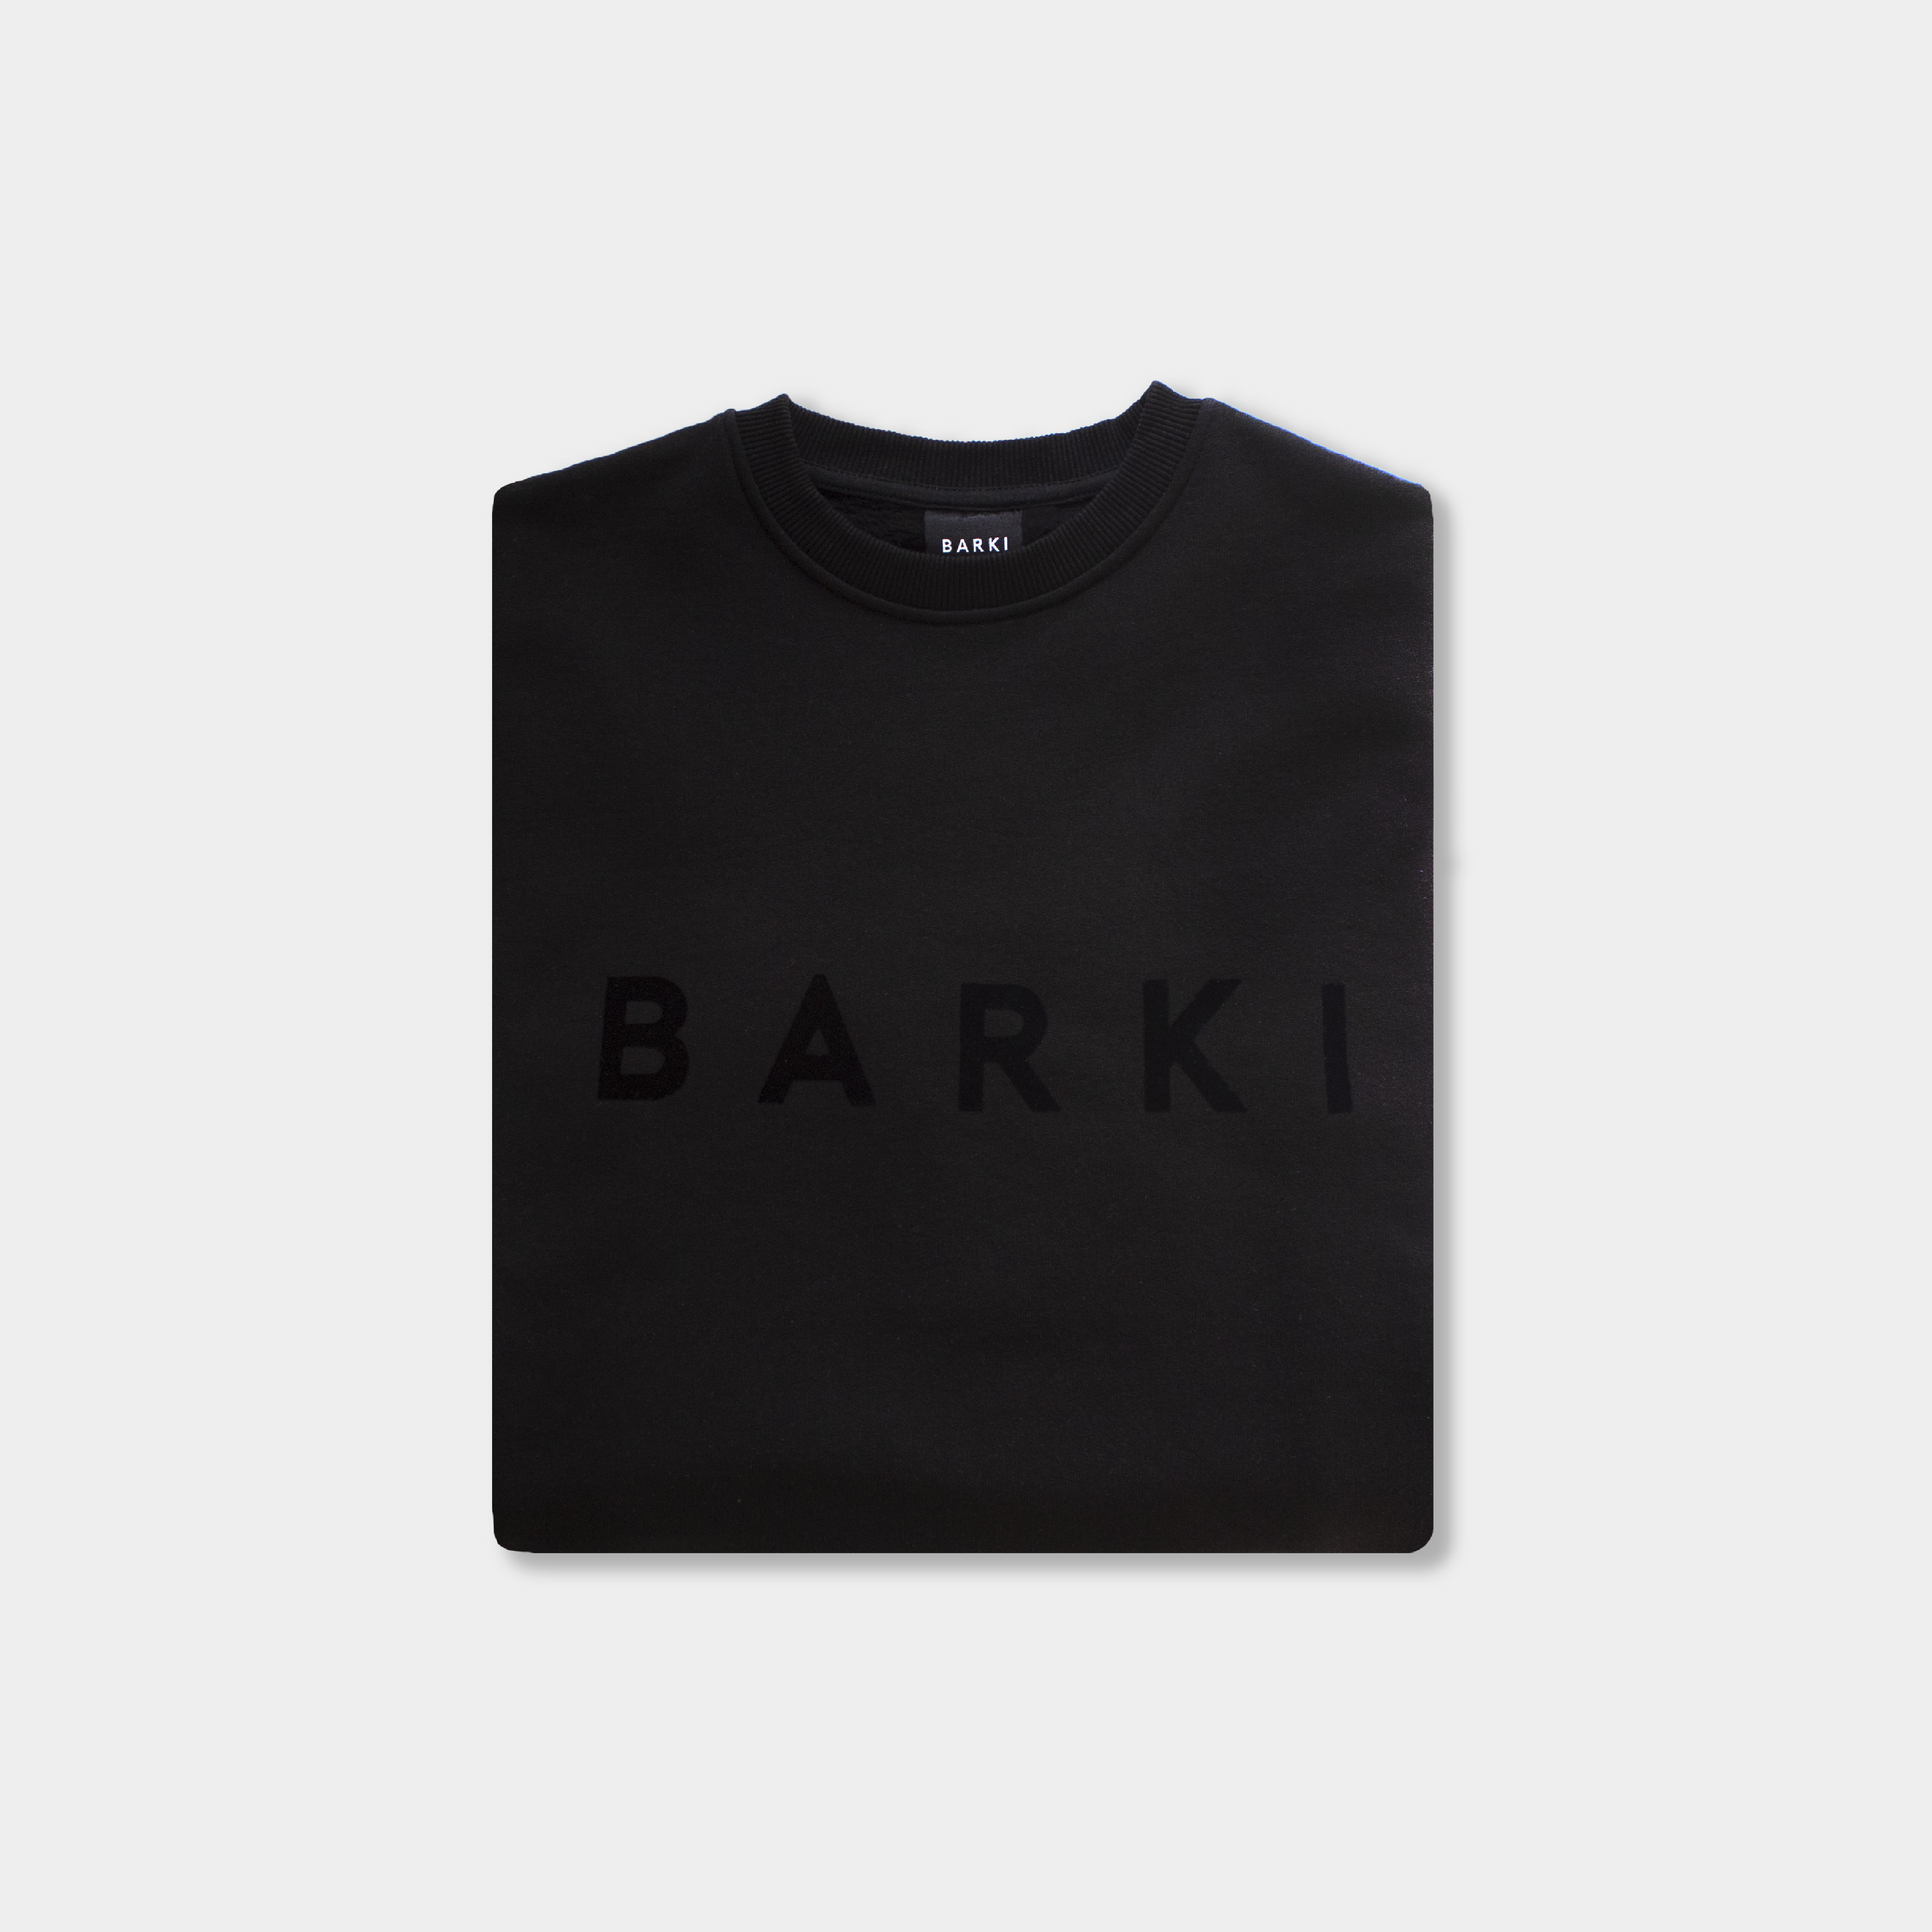 BARKI BARKI Crewneck - Barki zwart freeshipping - BARKI Sweaters 200.00 BARKI